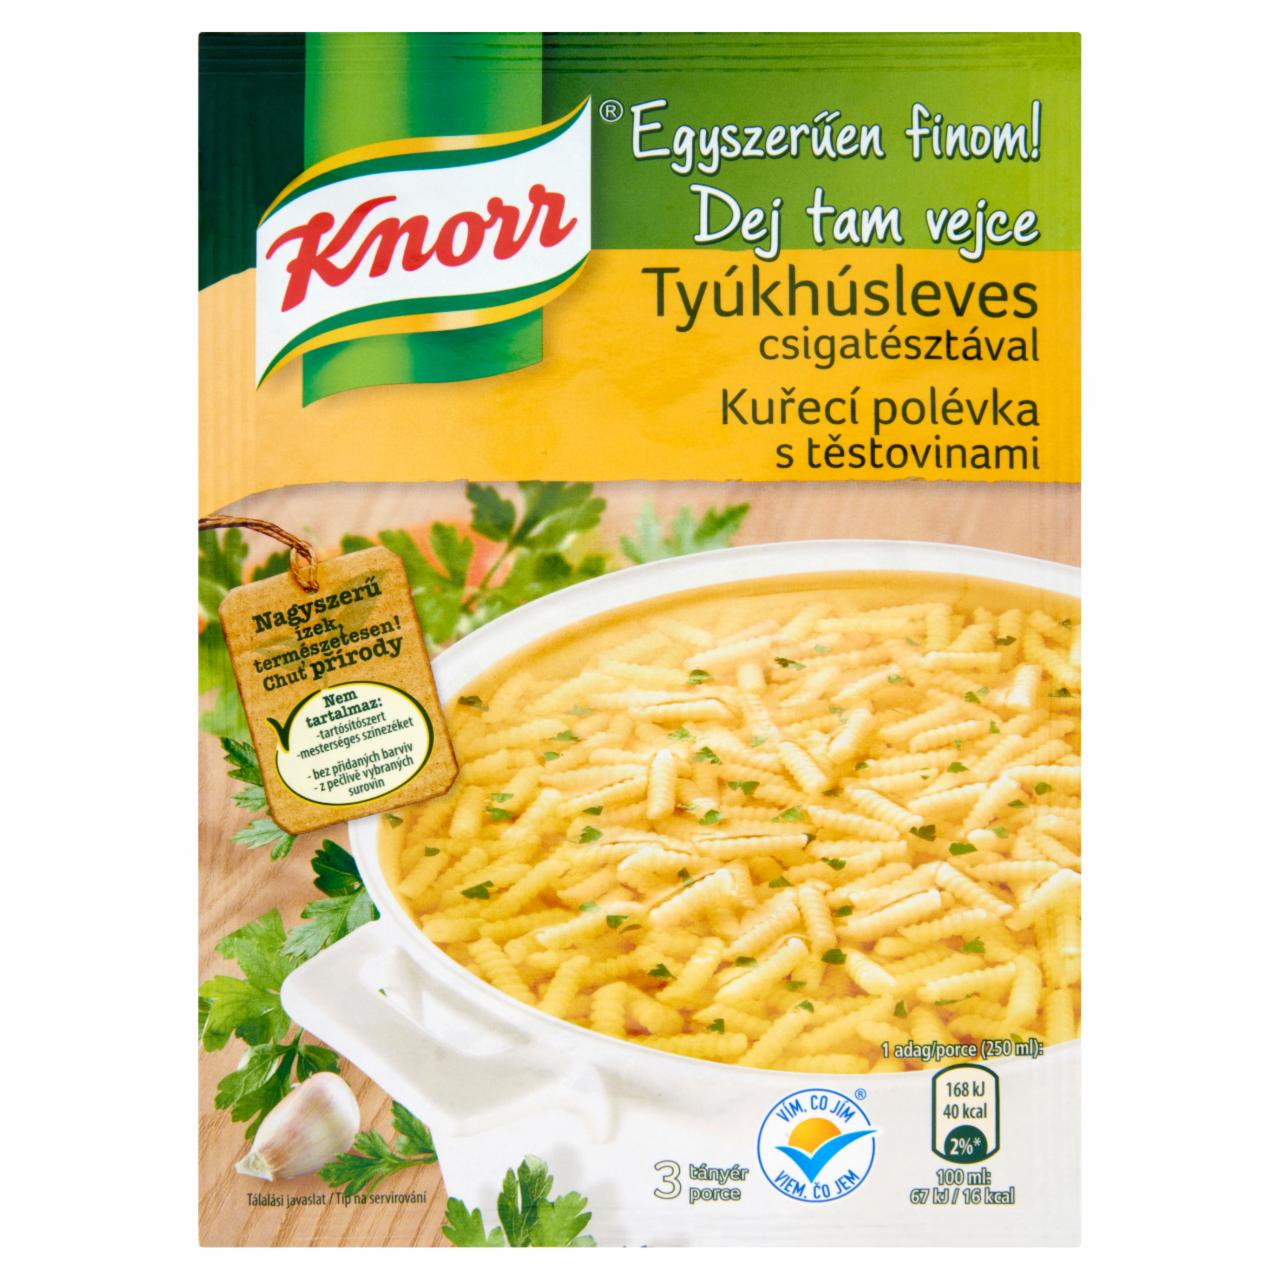 Képek - Knorr Egyszerűen finom! tyúkhúsleves csigatésztával 40 g